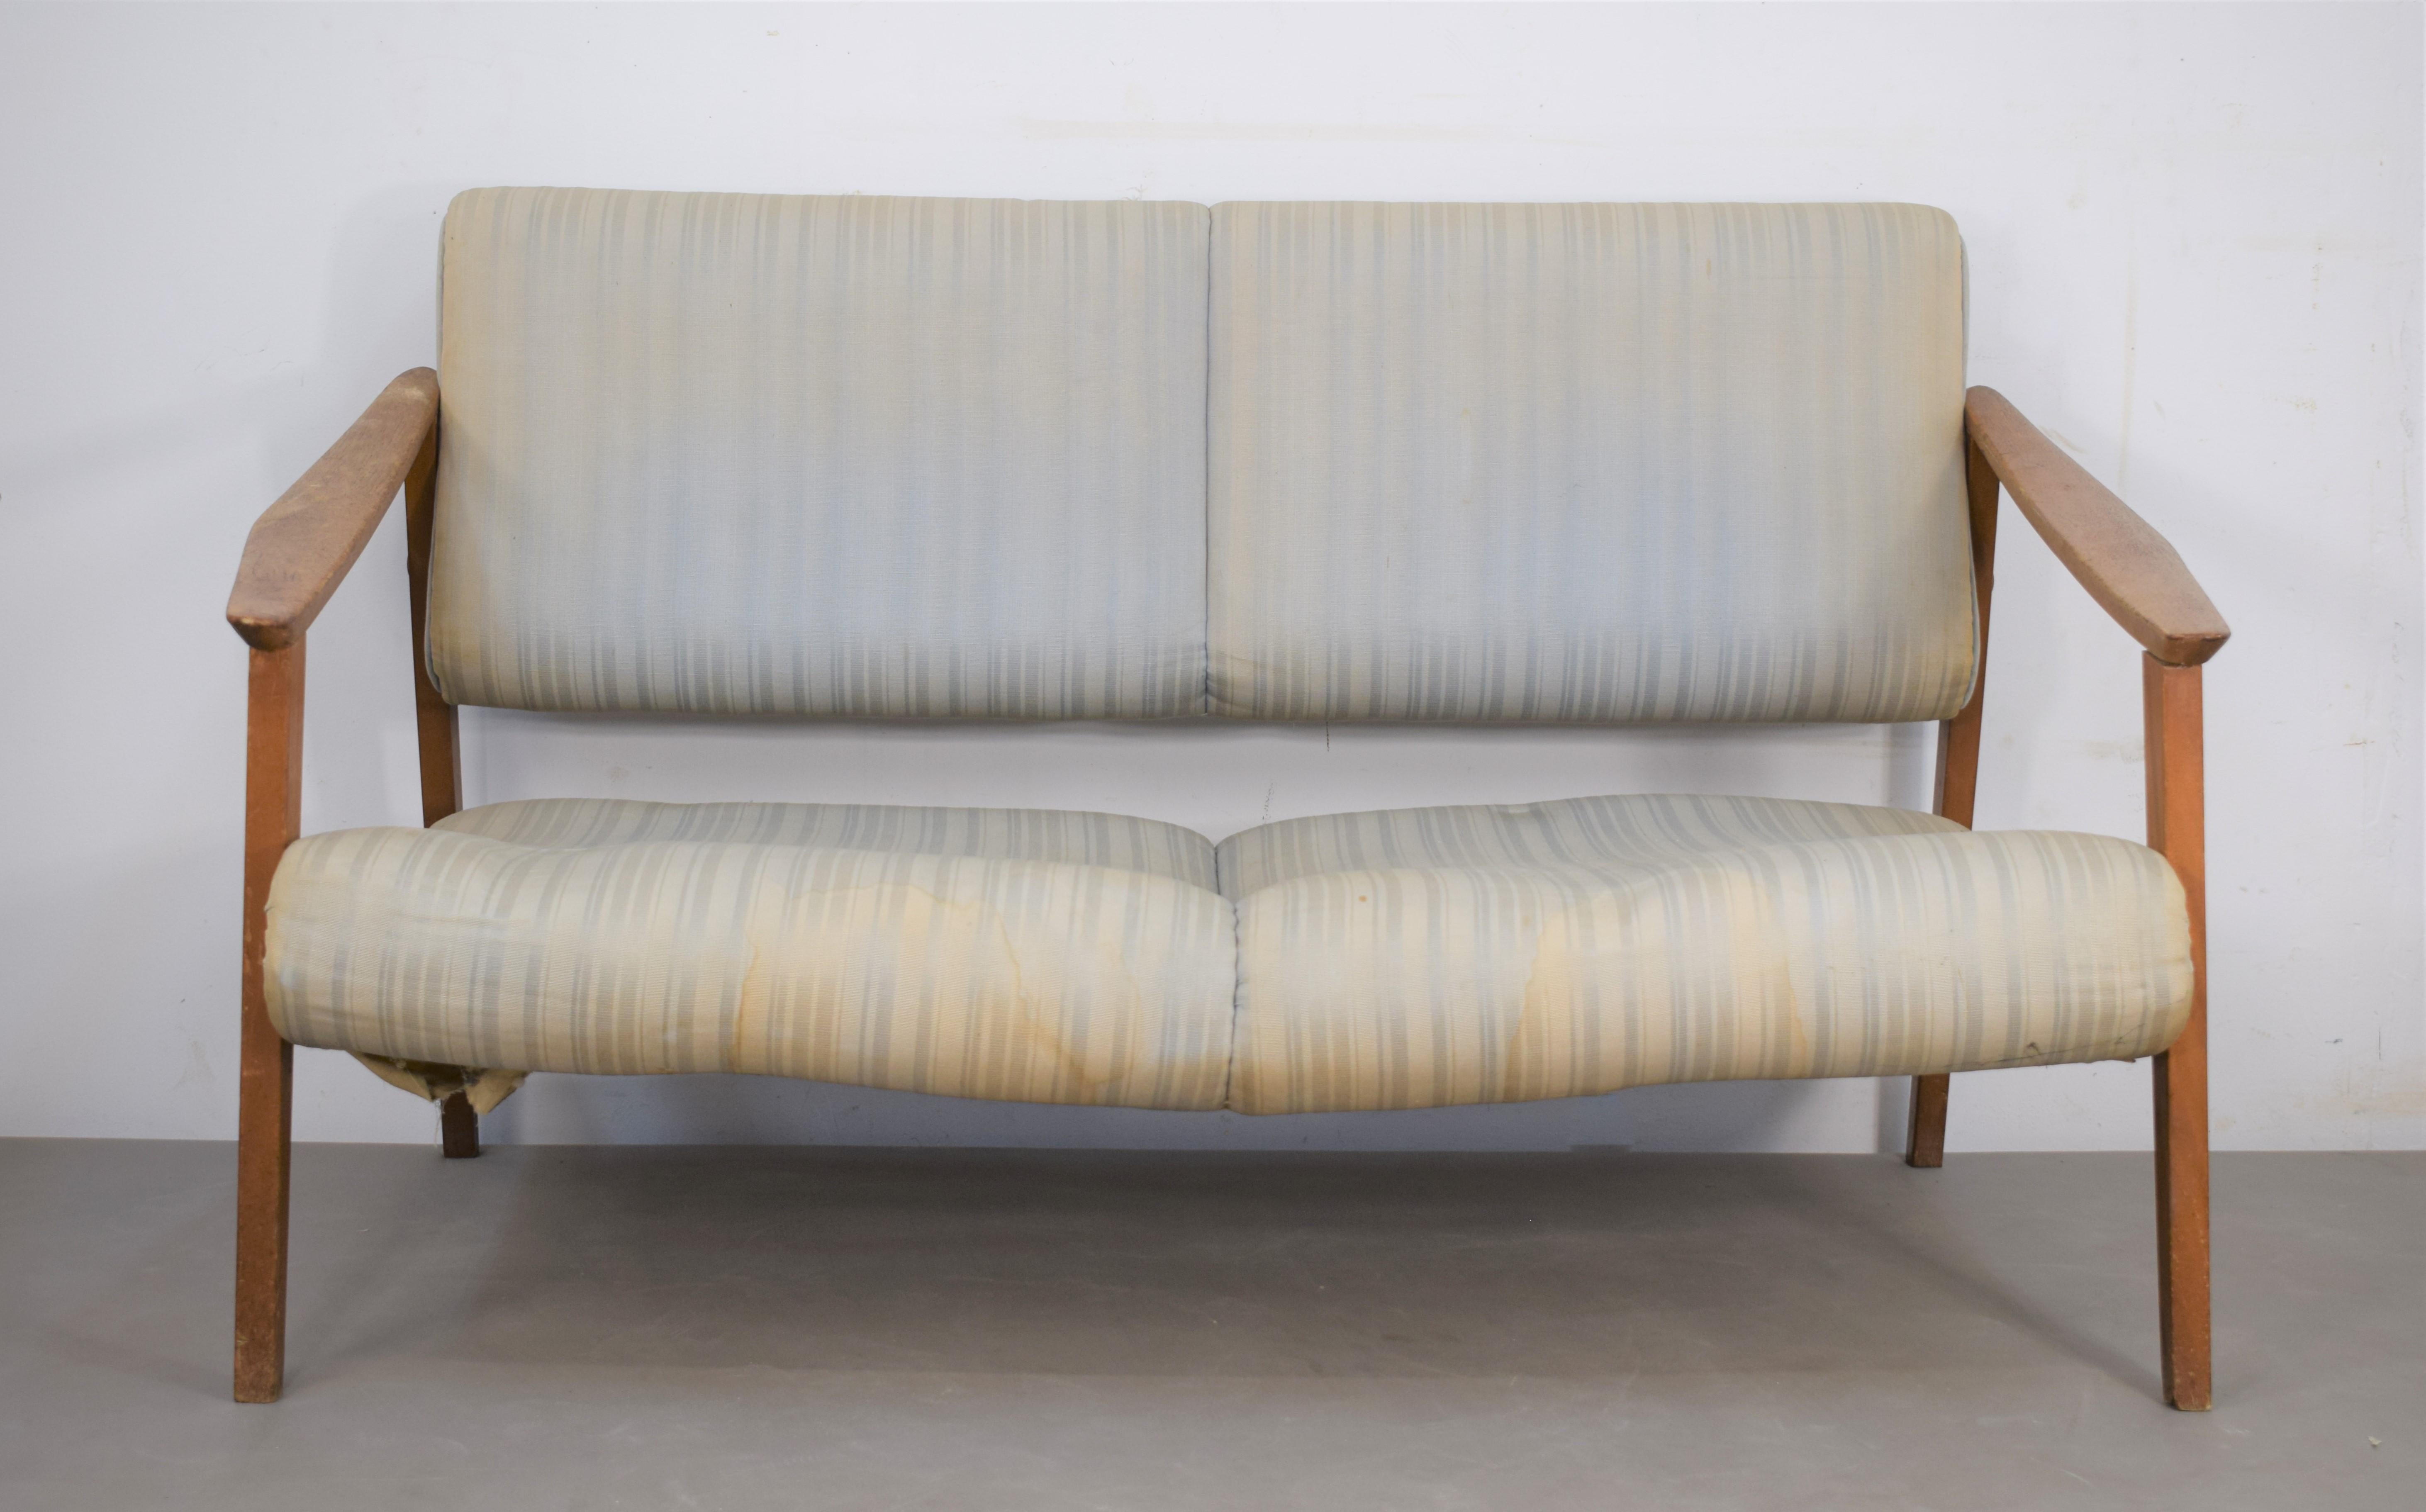 Italian sofa, 1970s.
Dimensions: H= 76 cm; W= 129 cm; D= 82 cm.